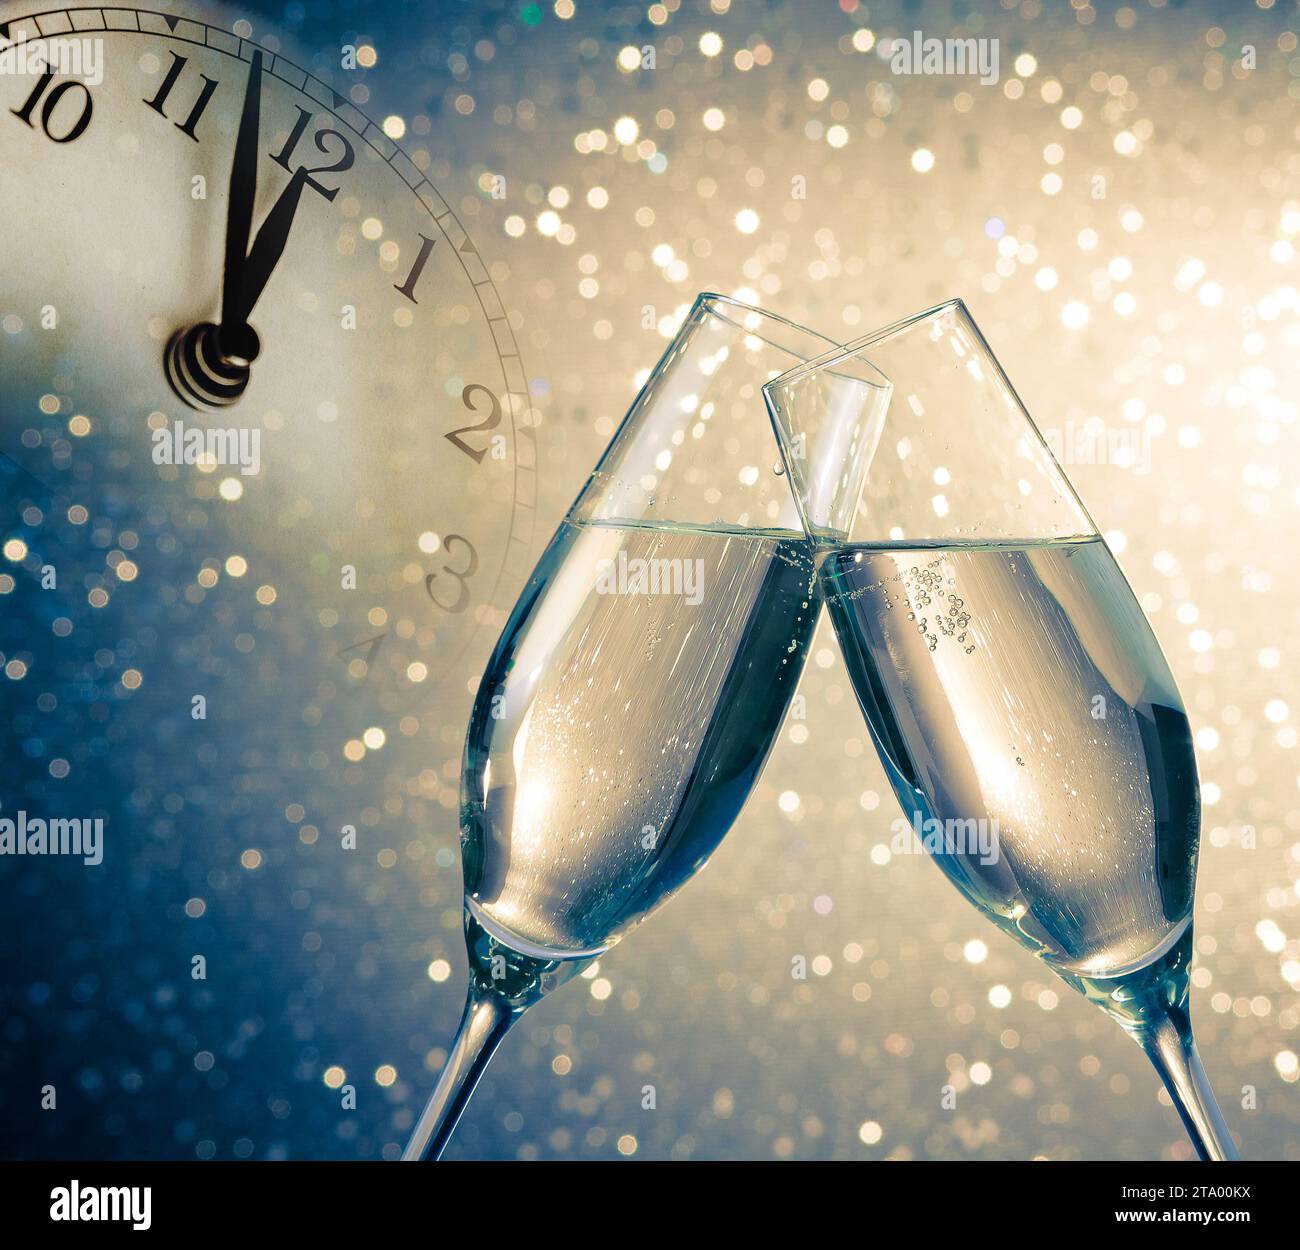 flauti di champagne con bollicine dorate fanno il tifo su sfondo bokeh blu e dorato con sveglia vintage che mostra il concetto di happy new year a mezzogiorno o mezzanotte Foto Stock